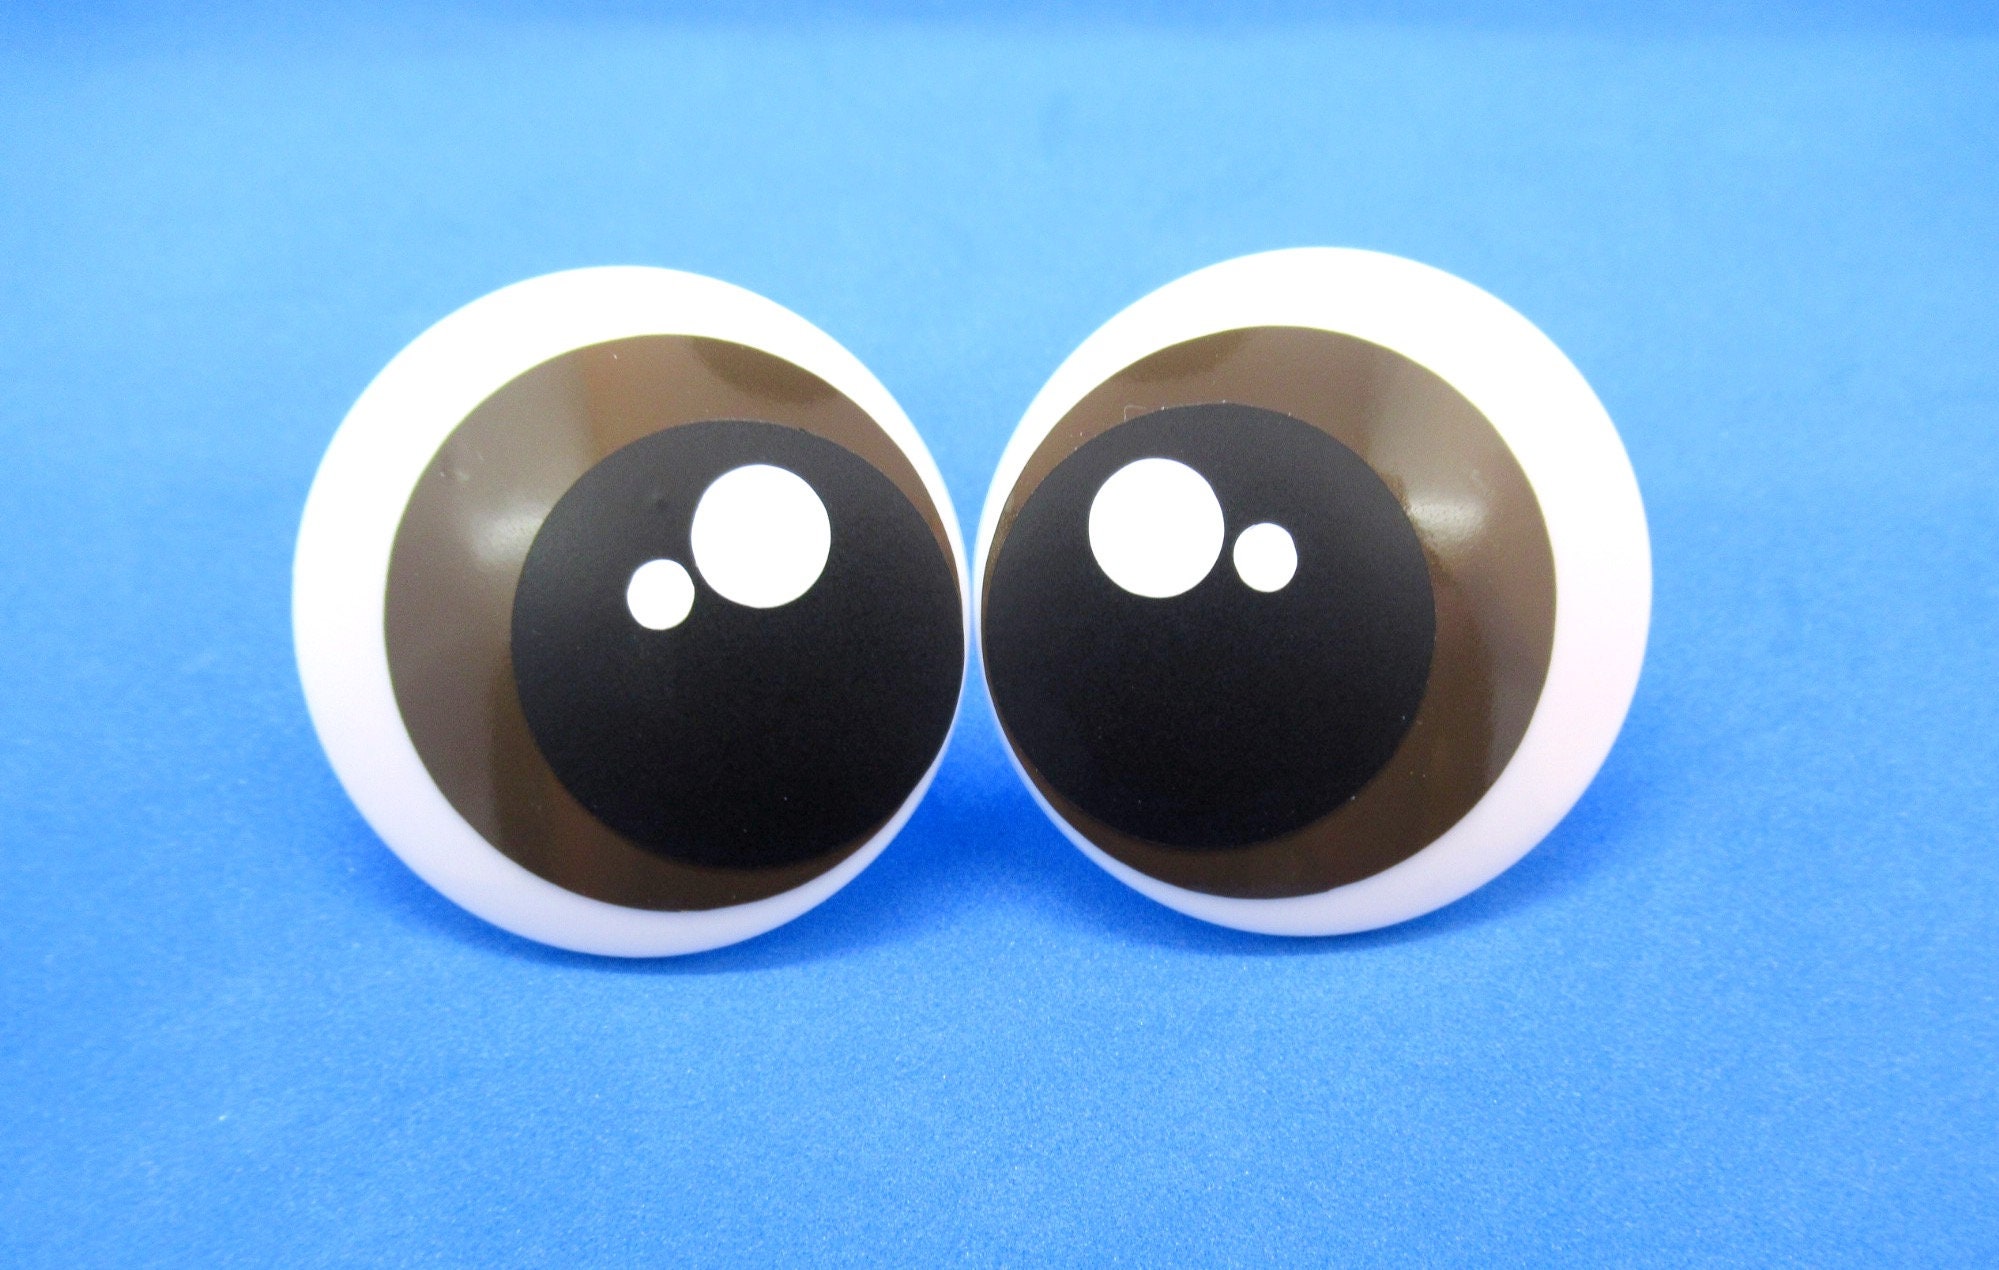 15mm Solid Black Round Flat Safety Eyes 5 Pairs Toy Eyes Plastic Animal  Eyes Teddy Bear Eyes Animal Eyes Safety Eyes 